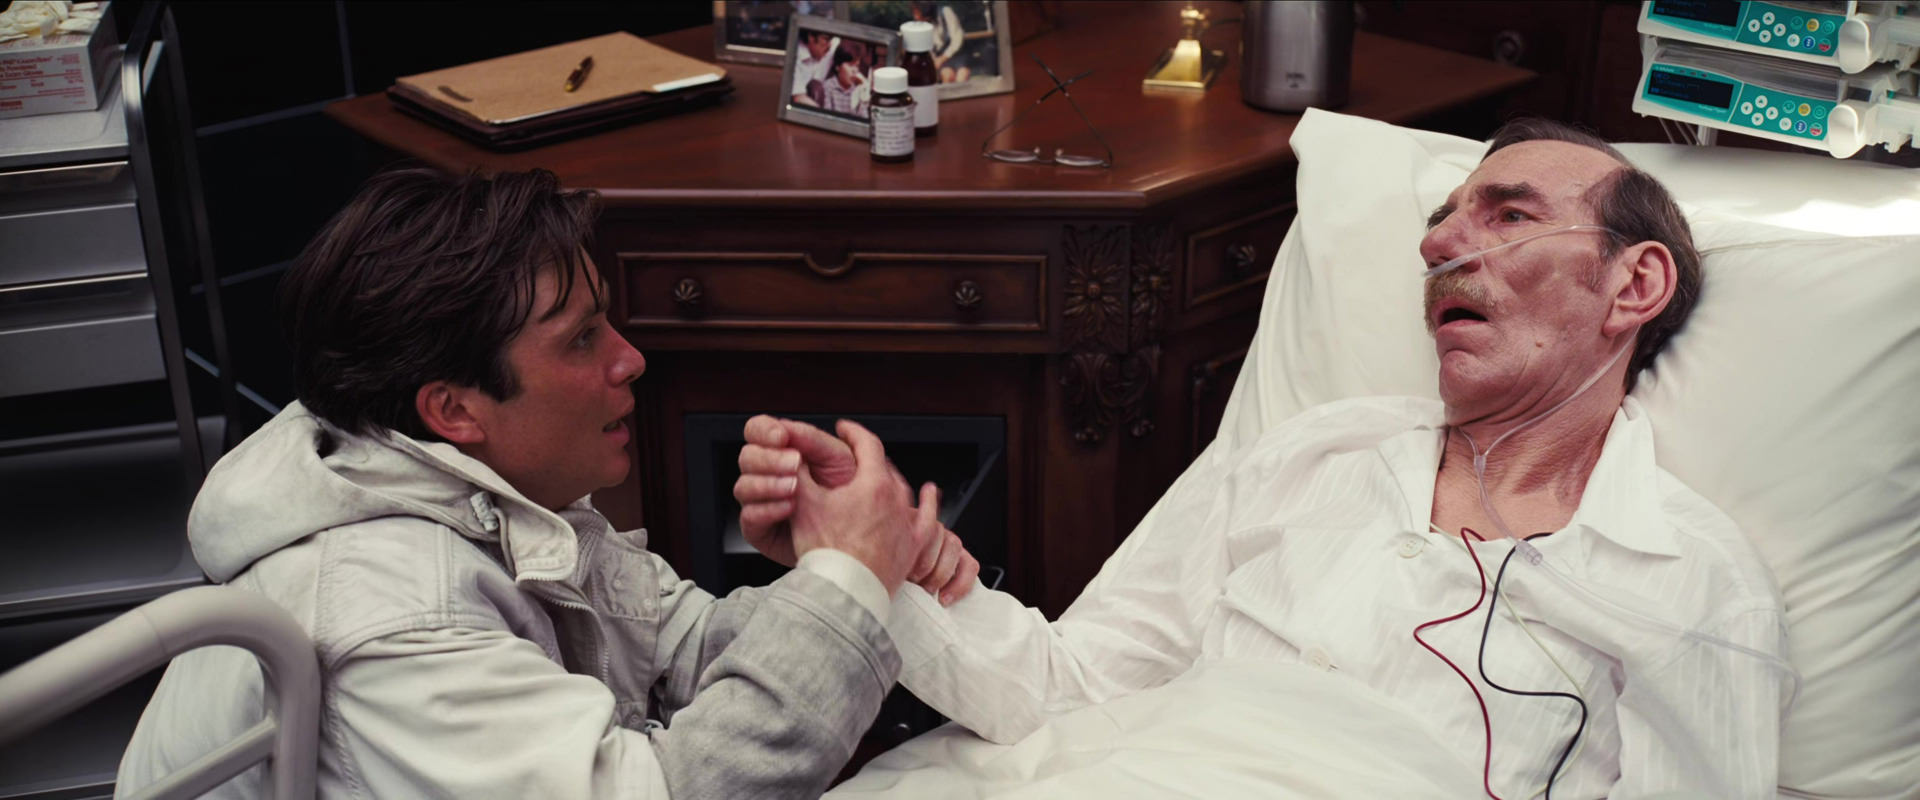 رابرت فیشر در کنار تخت پدرش در فیلم اینسپشن